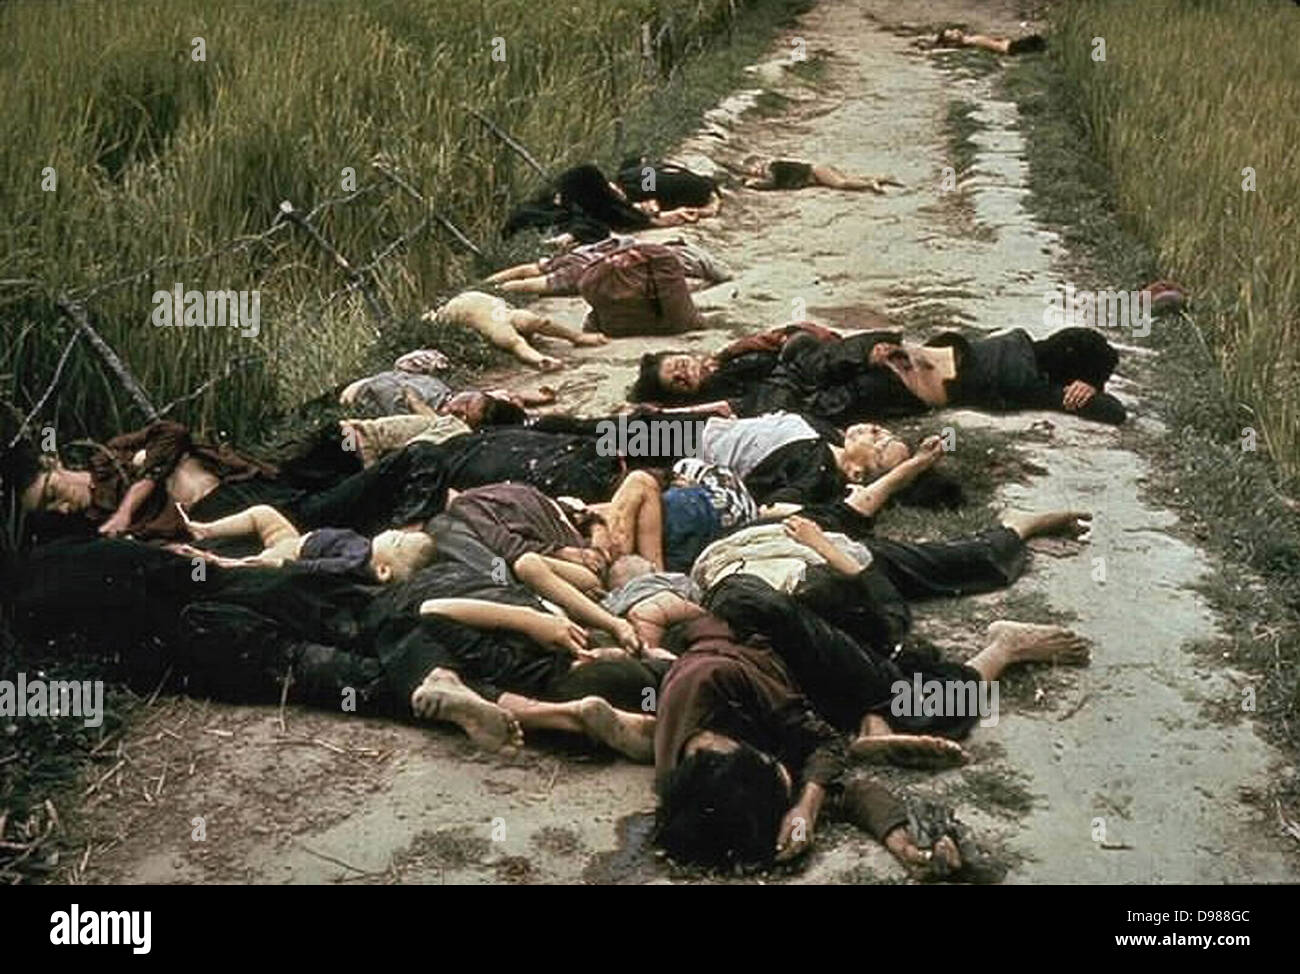 Das Massaker von My Lai, den Massenmord an 347, 504 unbewaffneten Bürgern der Republik Vietnam (Südvietnam), fast ausschließlich Zivilisten und die meisten von ihnen Frauen und Kinder, verübt durch Truppen der US-Armee am 16. März 1968. Organe der einige der Opfer liegen entlang einer Straße. Stockfoto